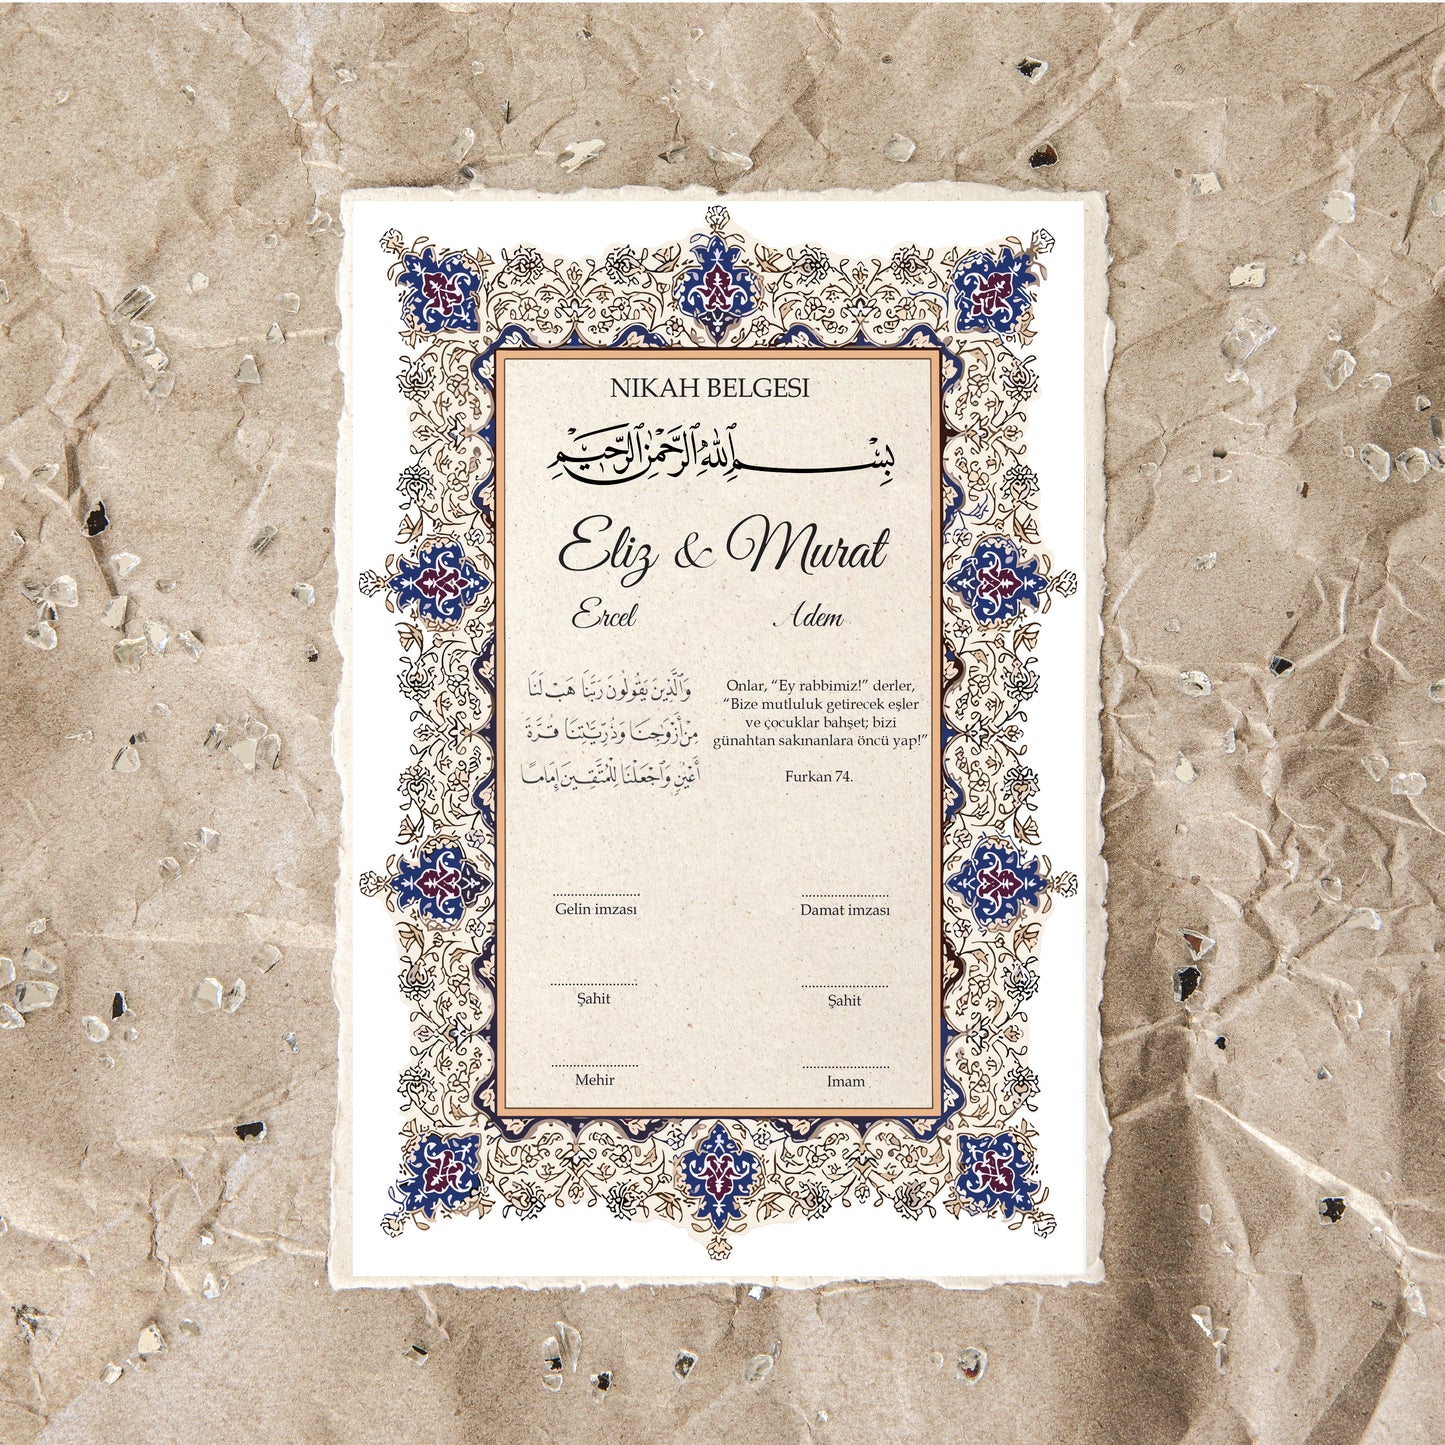 nikah akte - verloving akte - nikah belgesi - trouw certificate - huwelijk certificaat - dini nikah belgesi - islamitische akte - islam certificaat - trouw bewijs - trouwakte - huwelijksakte